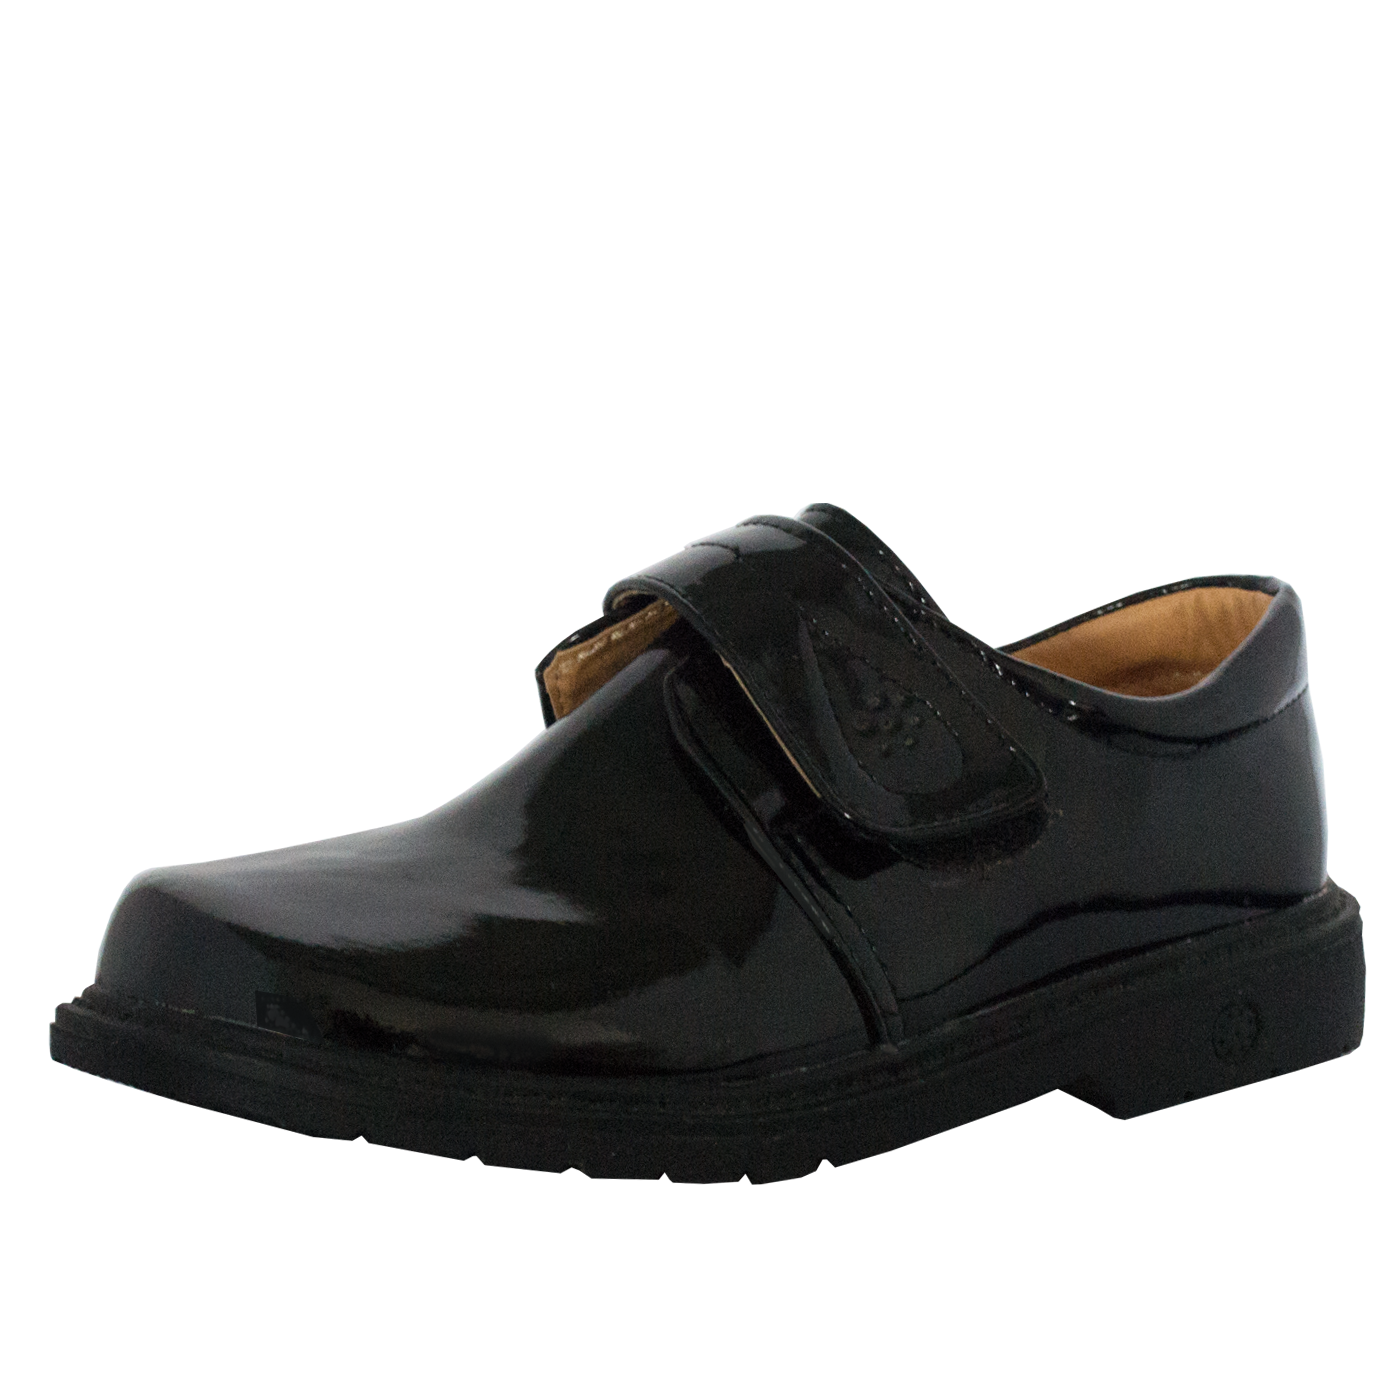 Alex School Shoes Black Size 25 to 38